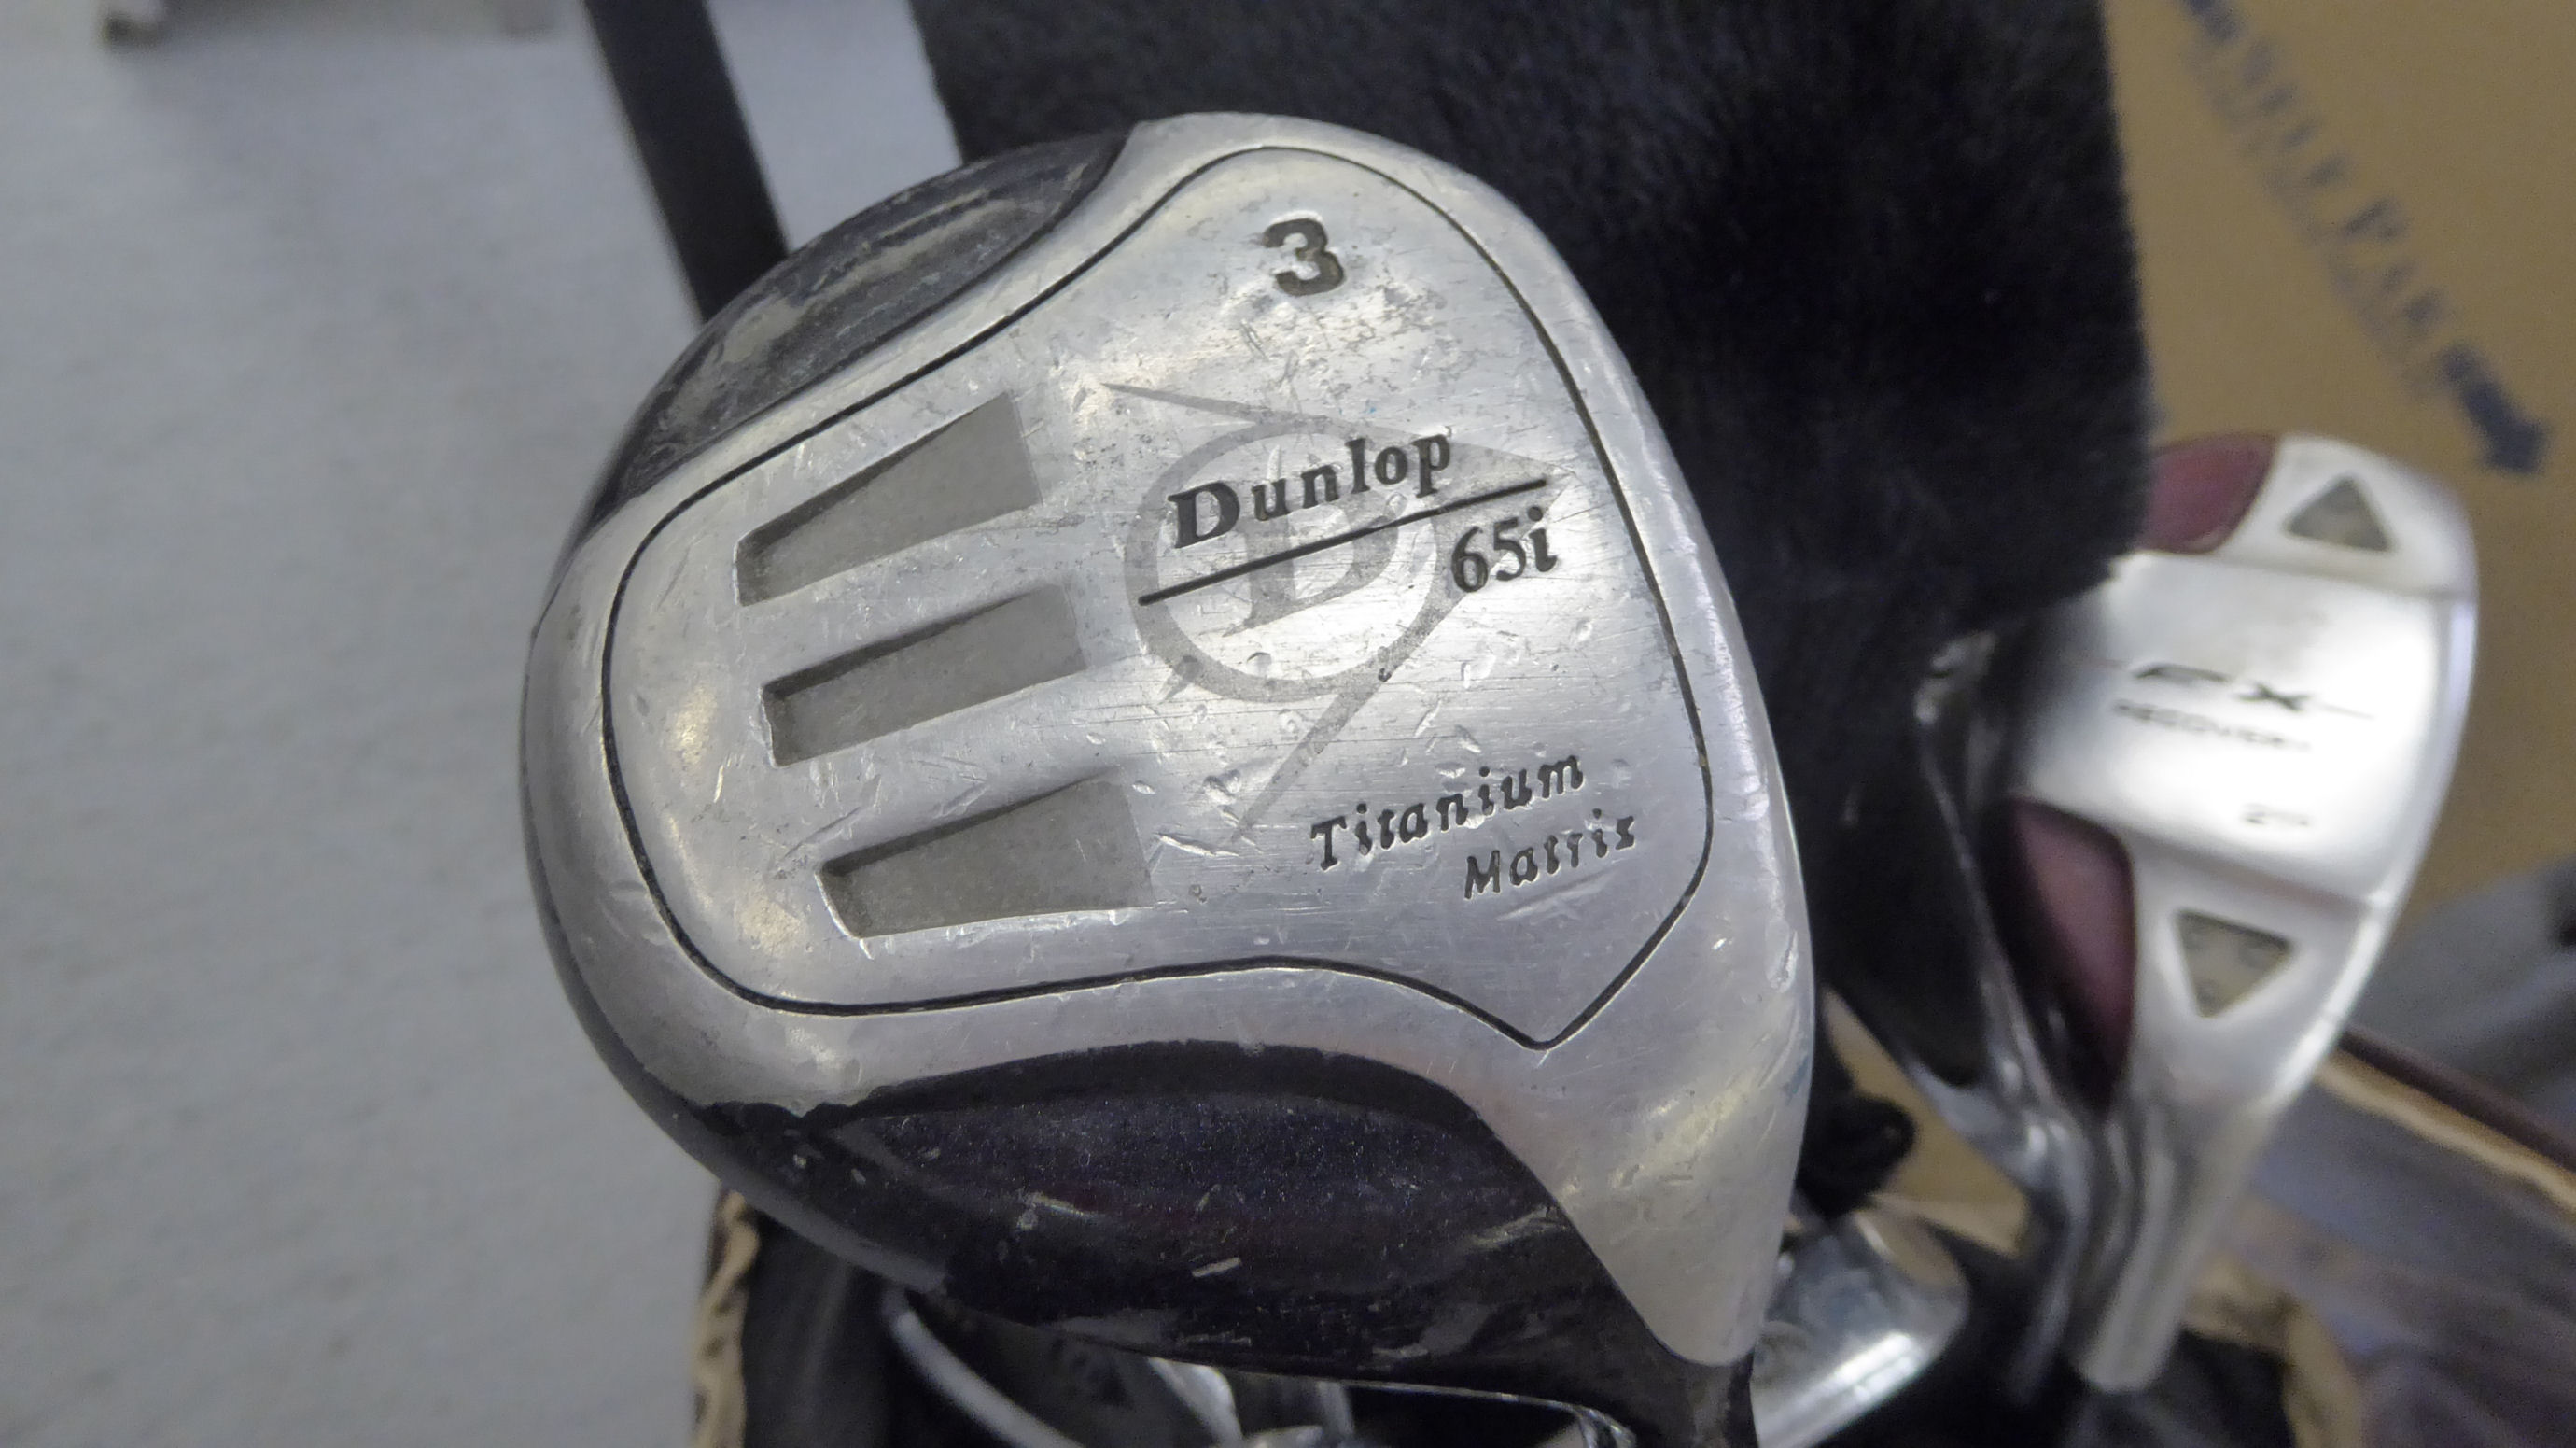 A Cobra golf bag; gentlemens right-handed Dunlop golf clubs; a Dunlop golf trolley; - Image 3 of 4